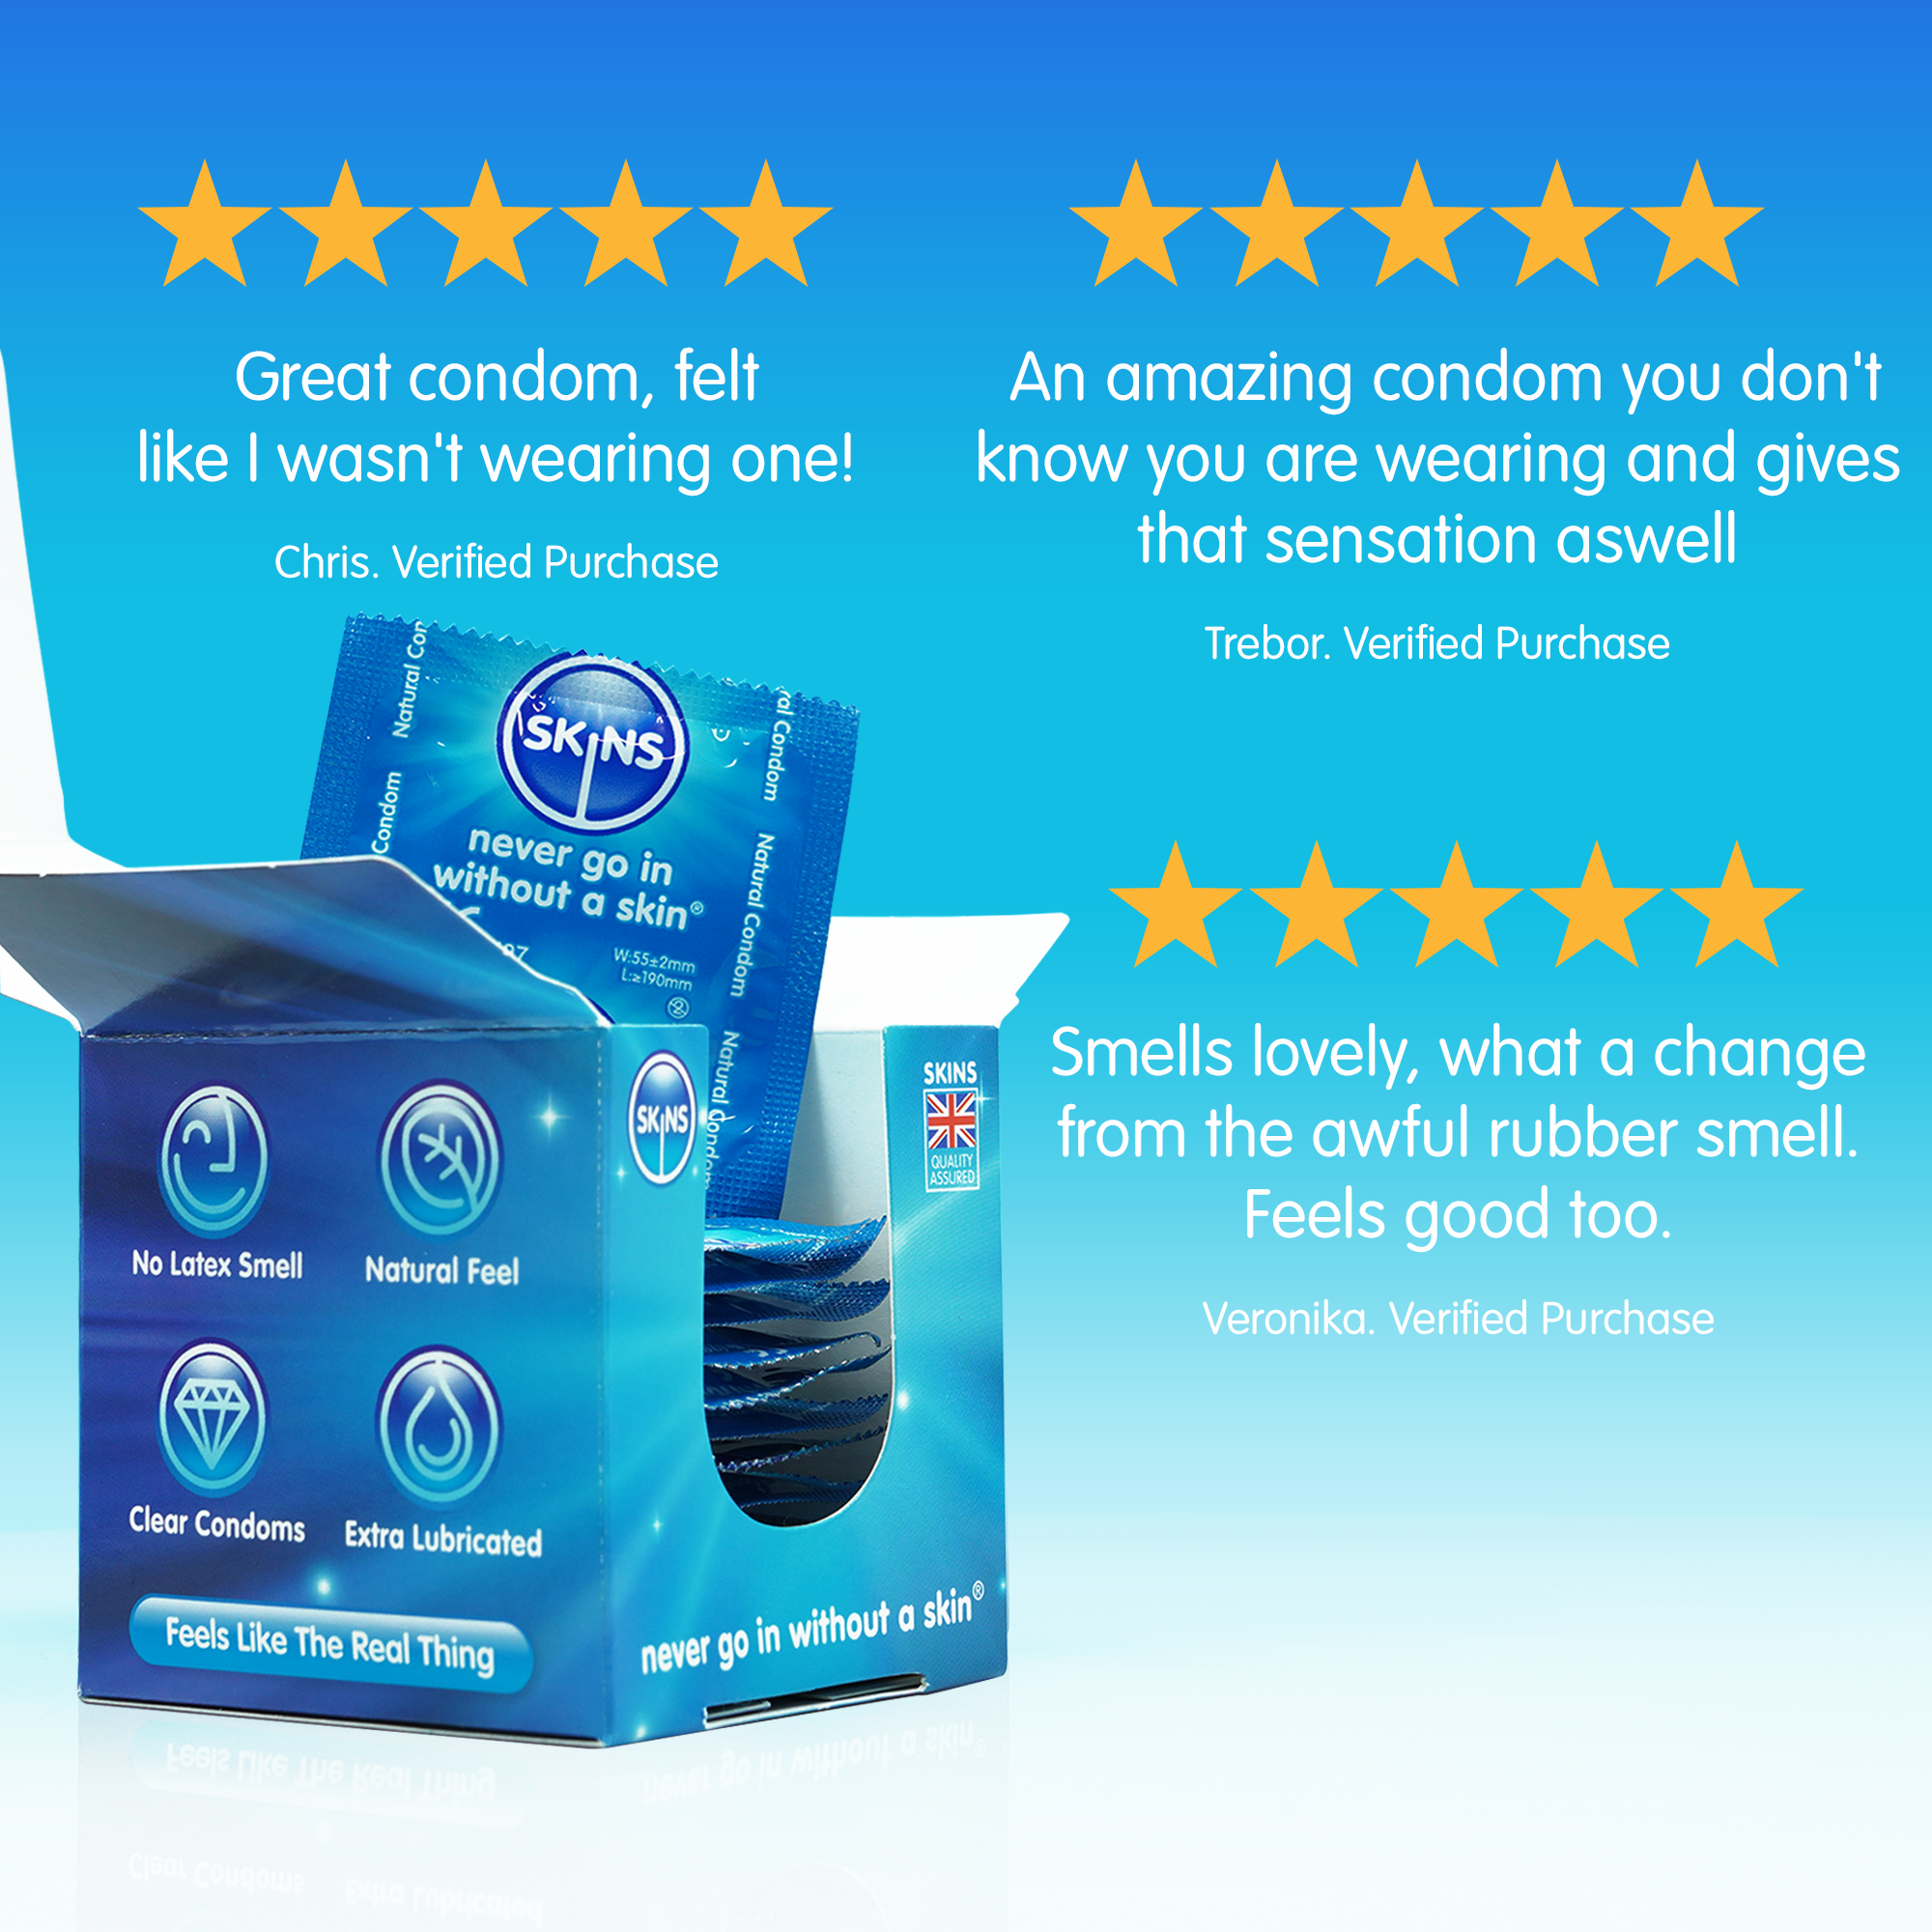 Skins Natural Condom-16 pack